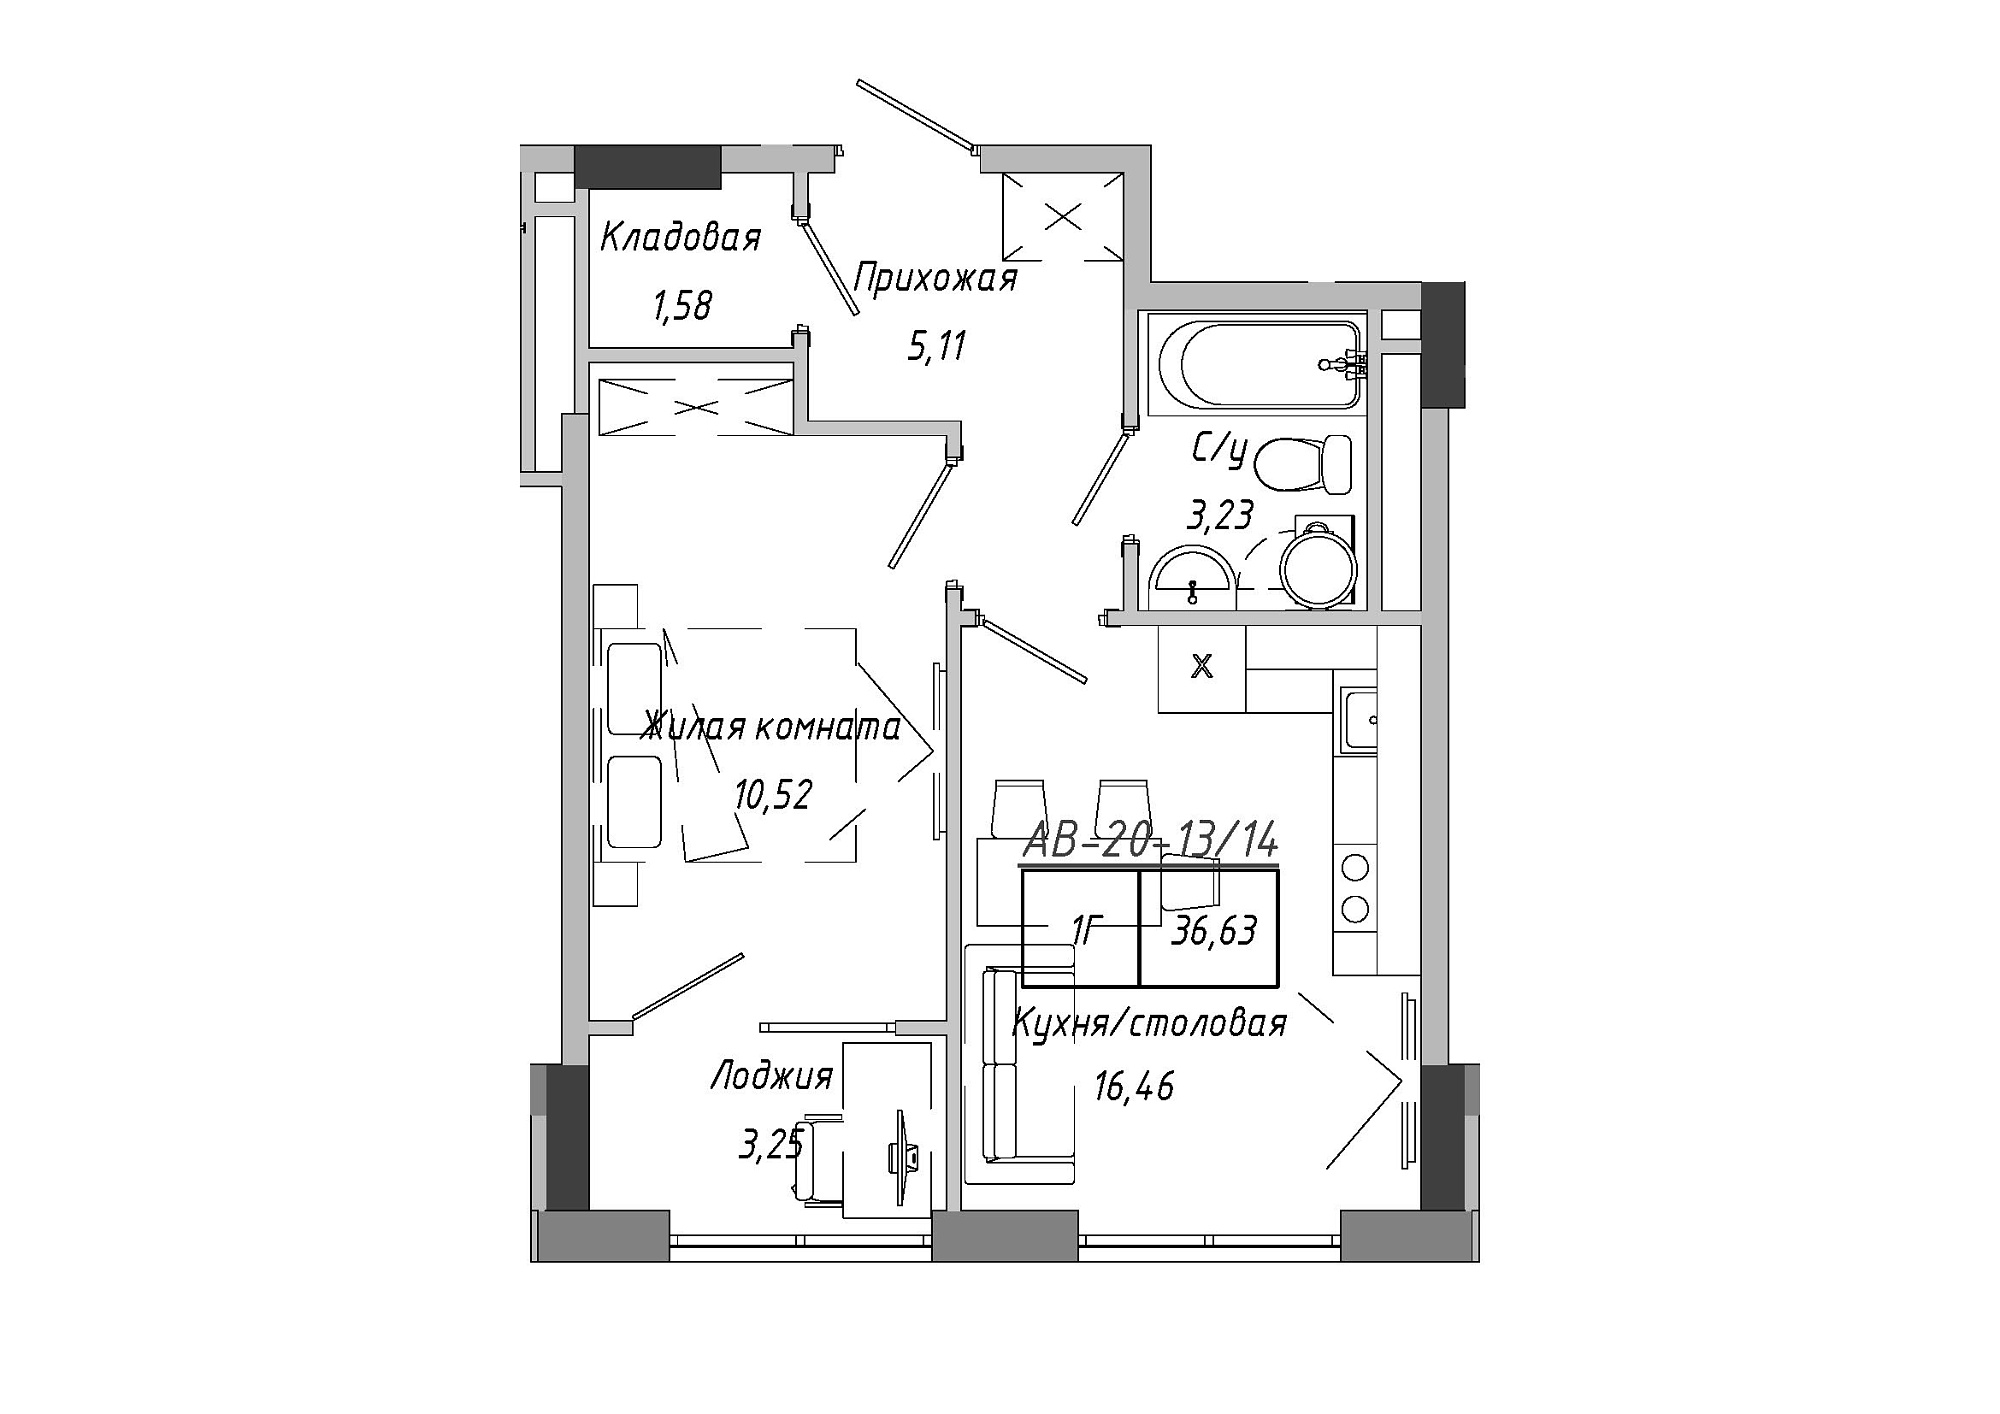 Планування 1-к квартира площею 36.63м2, AB-20-13/00114.